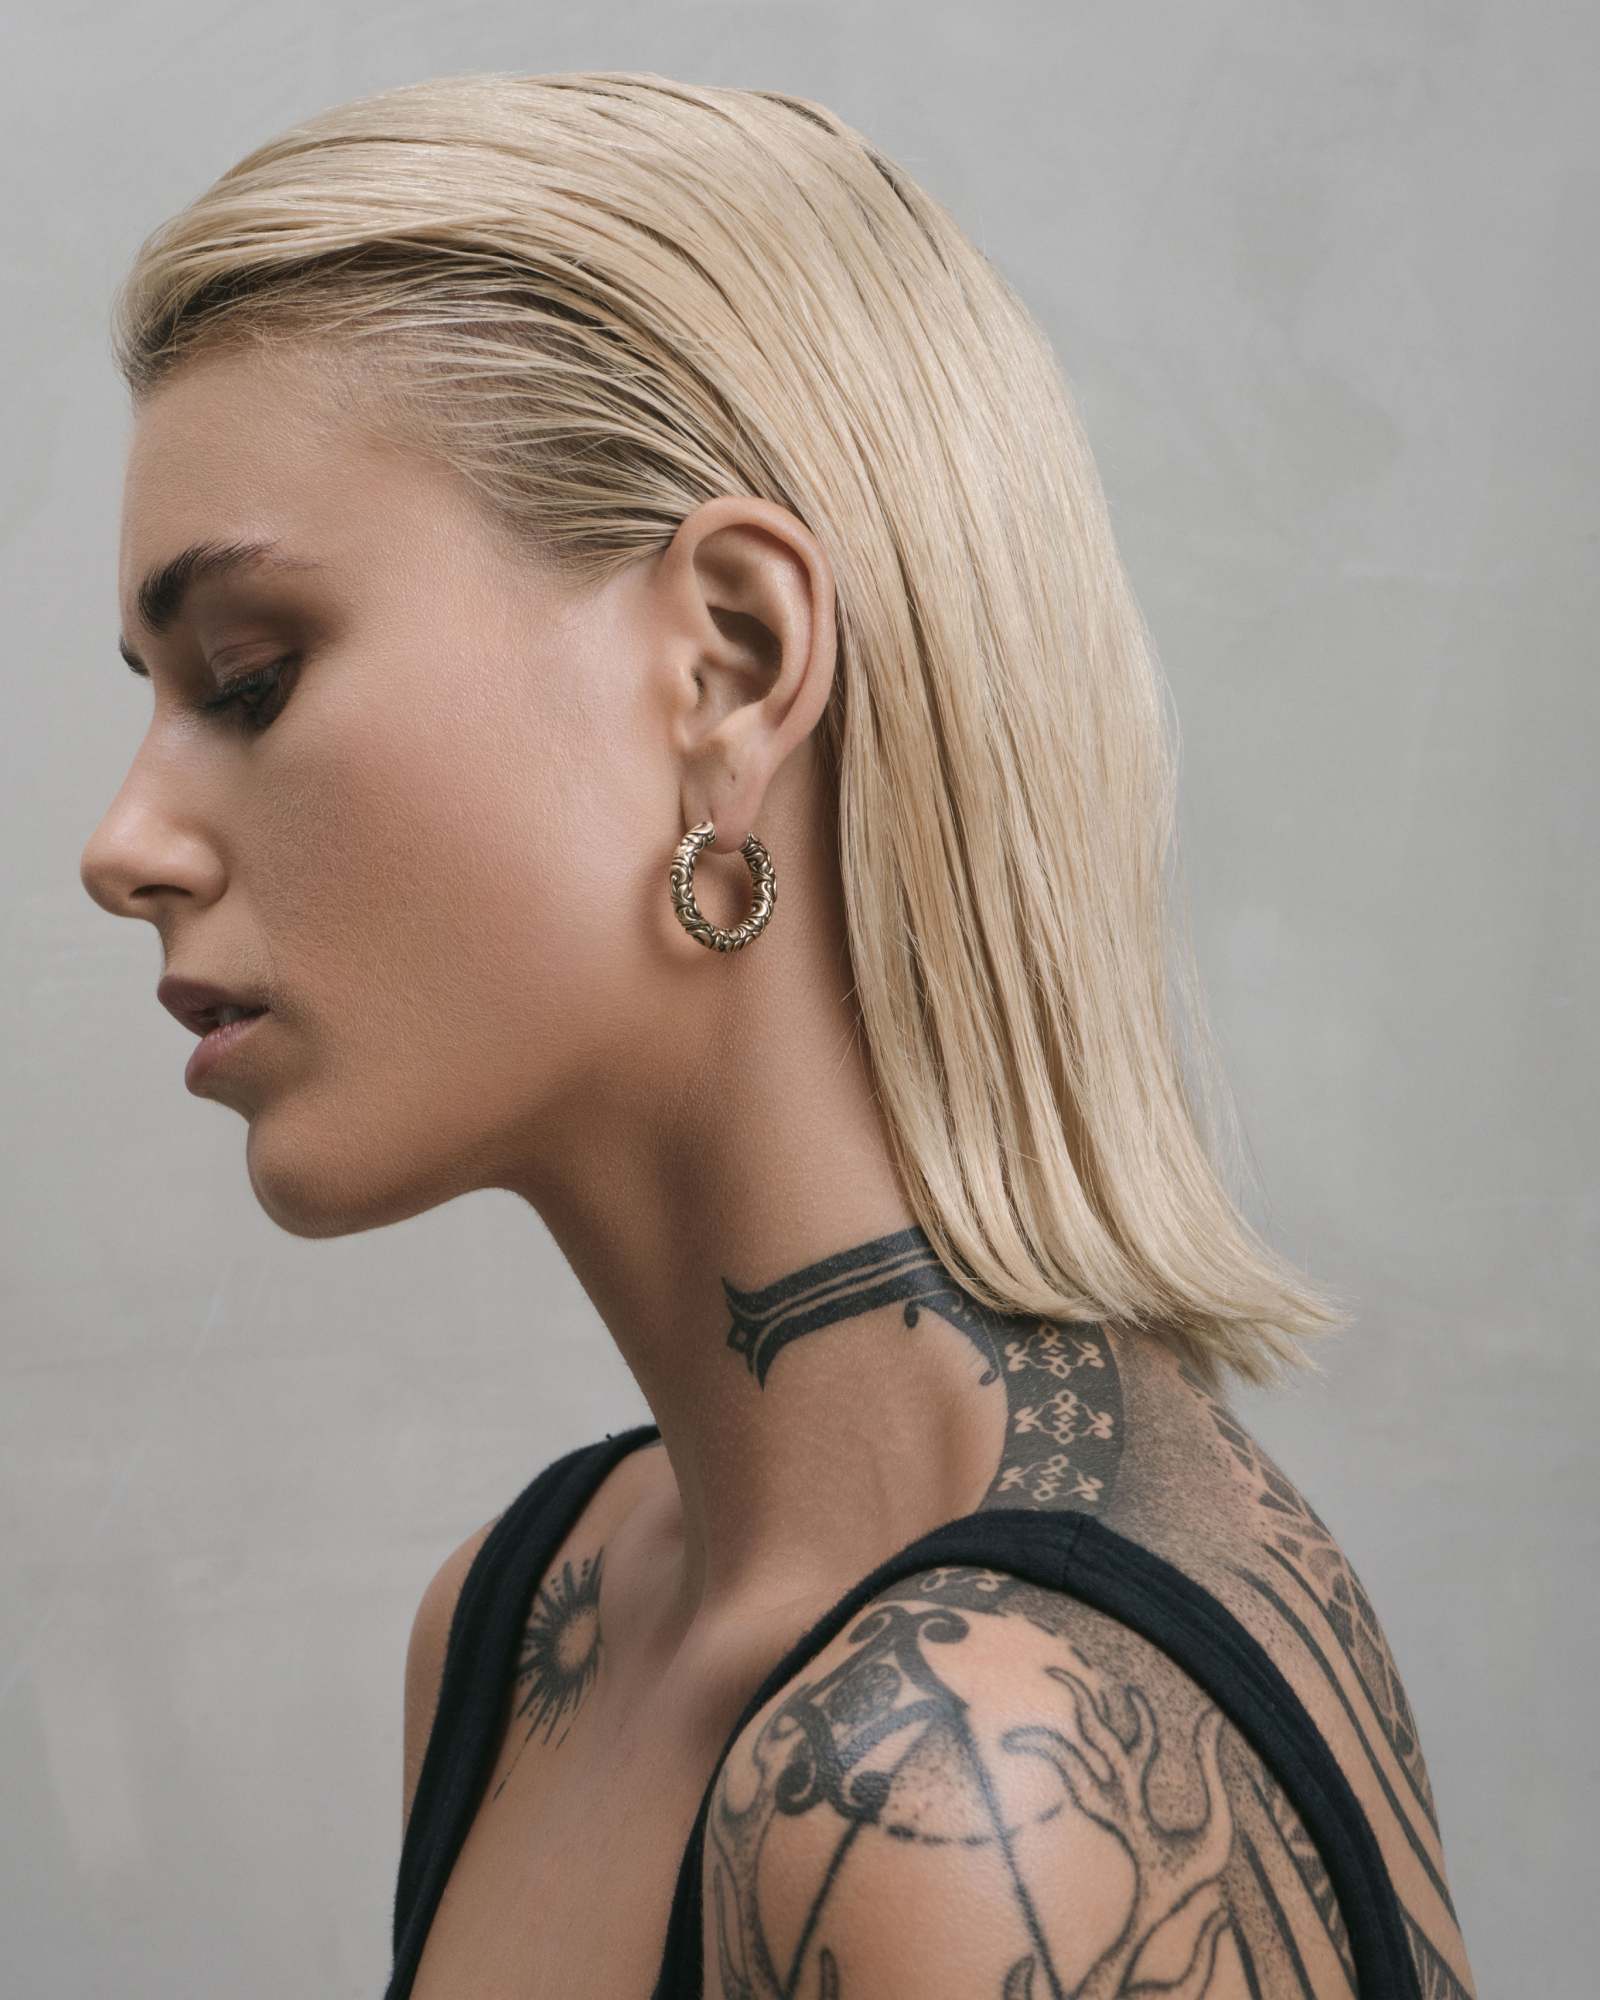 Alternative Earrings - Alternative Jewelry for Ear Piercings